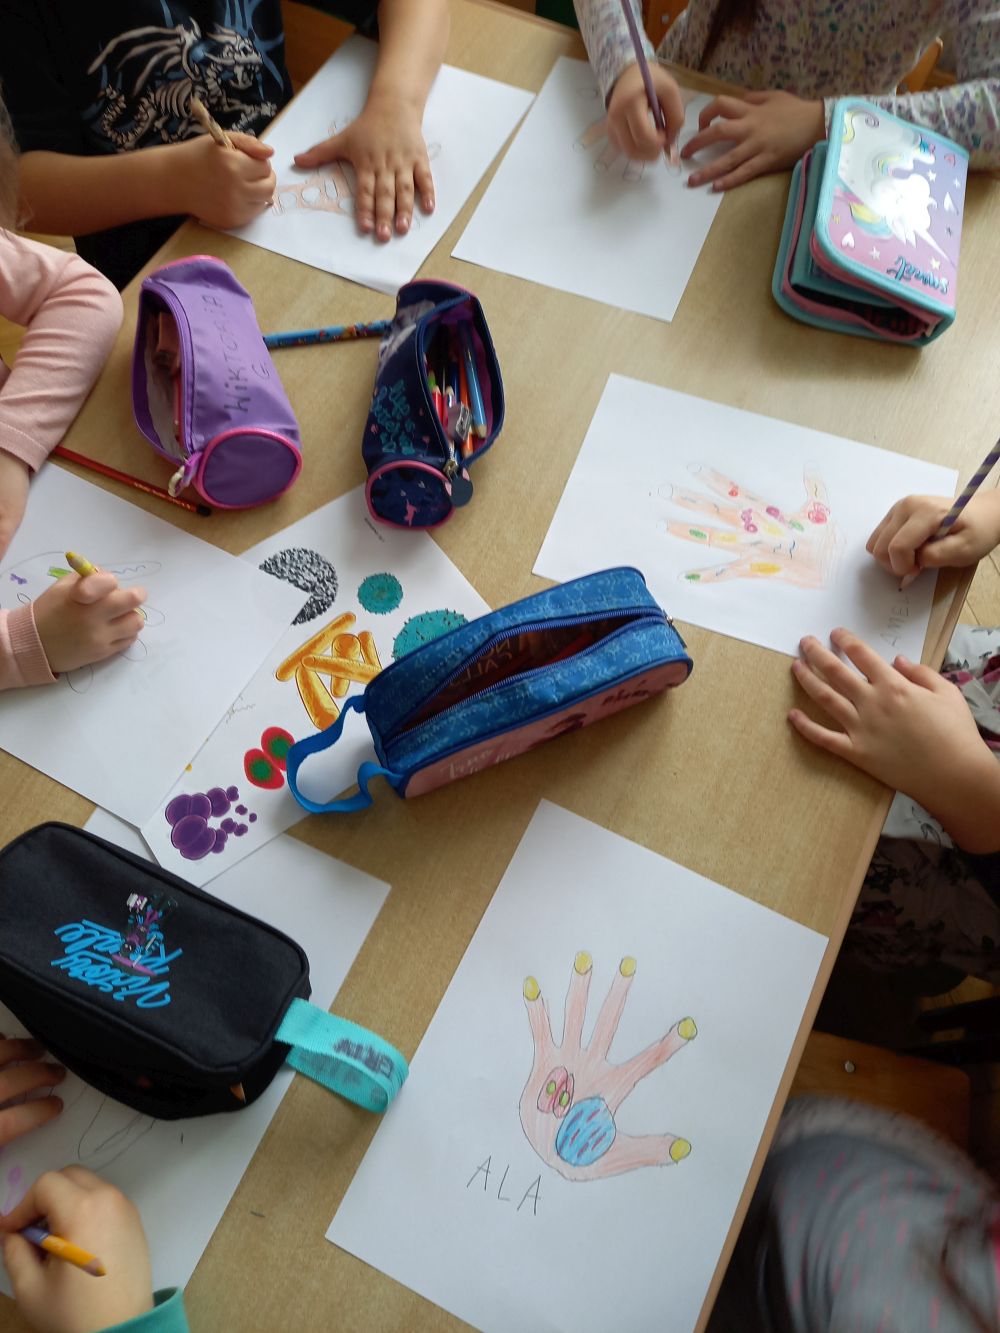 dzieci siedzą przy stoliku i rysują bakterie na odrysowanych dłoniach na kartach papieru